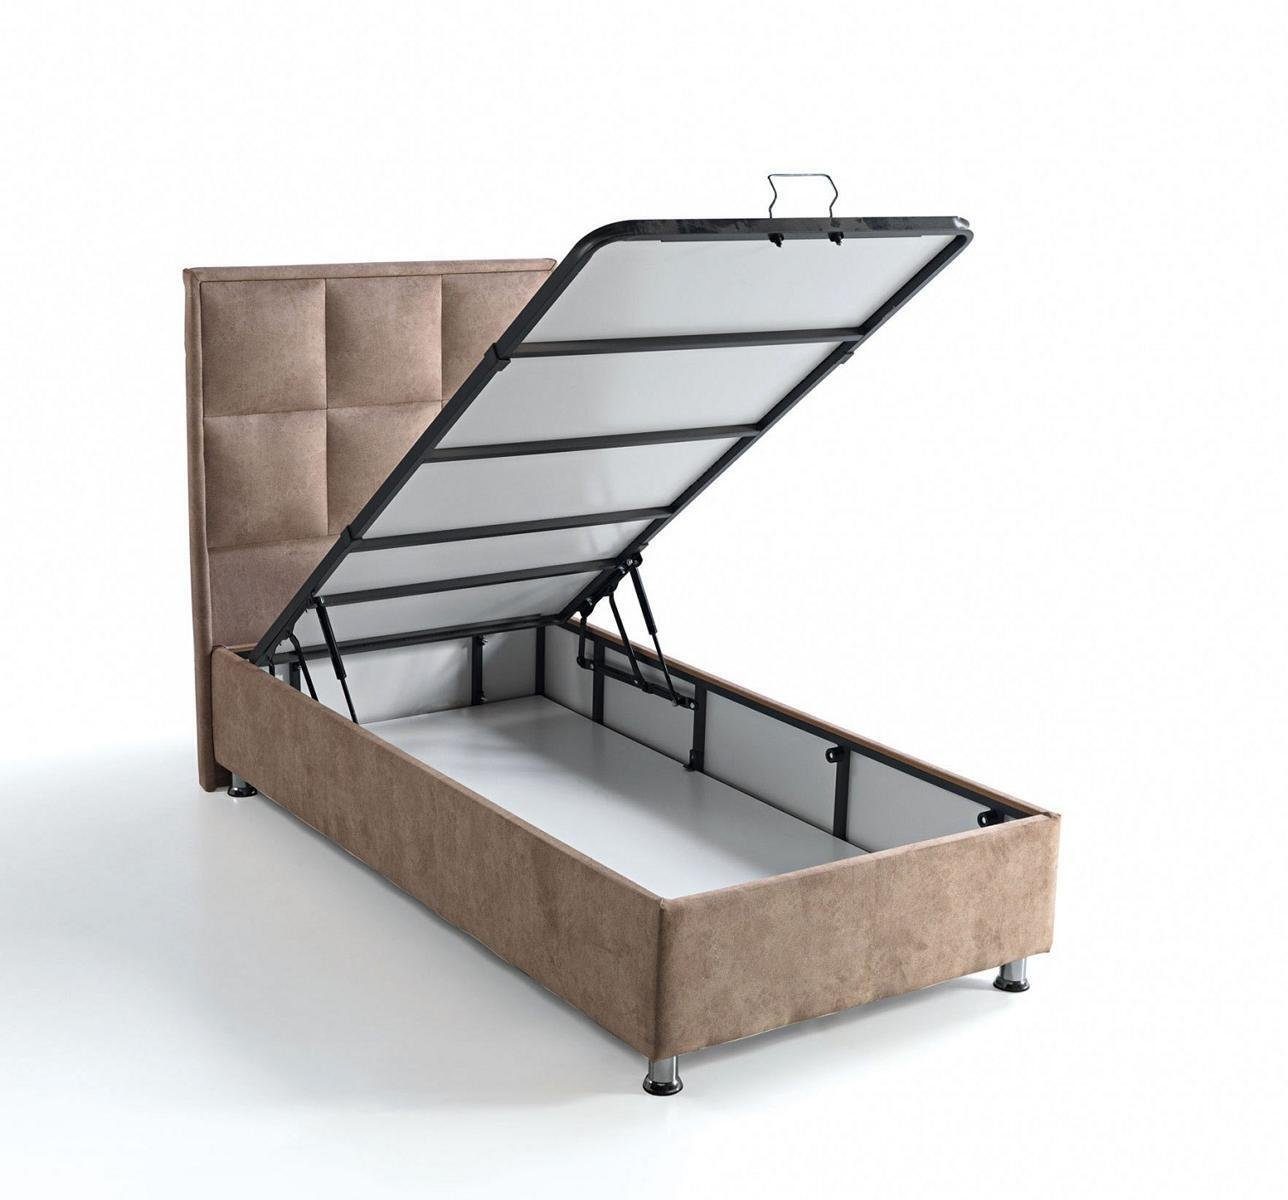 Schlafzimmer JVmoebel Made Europe Möbel (Bett), Luxus Betten In Design Bett Polster Bett Modern 90x190